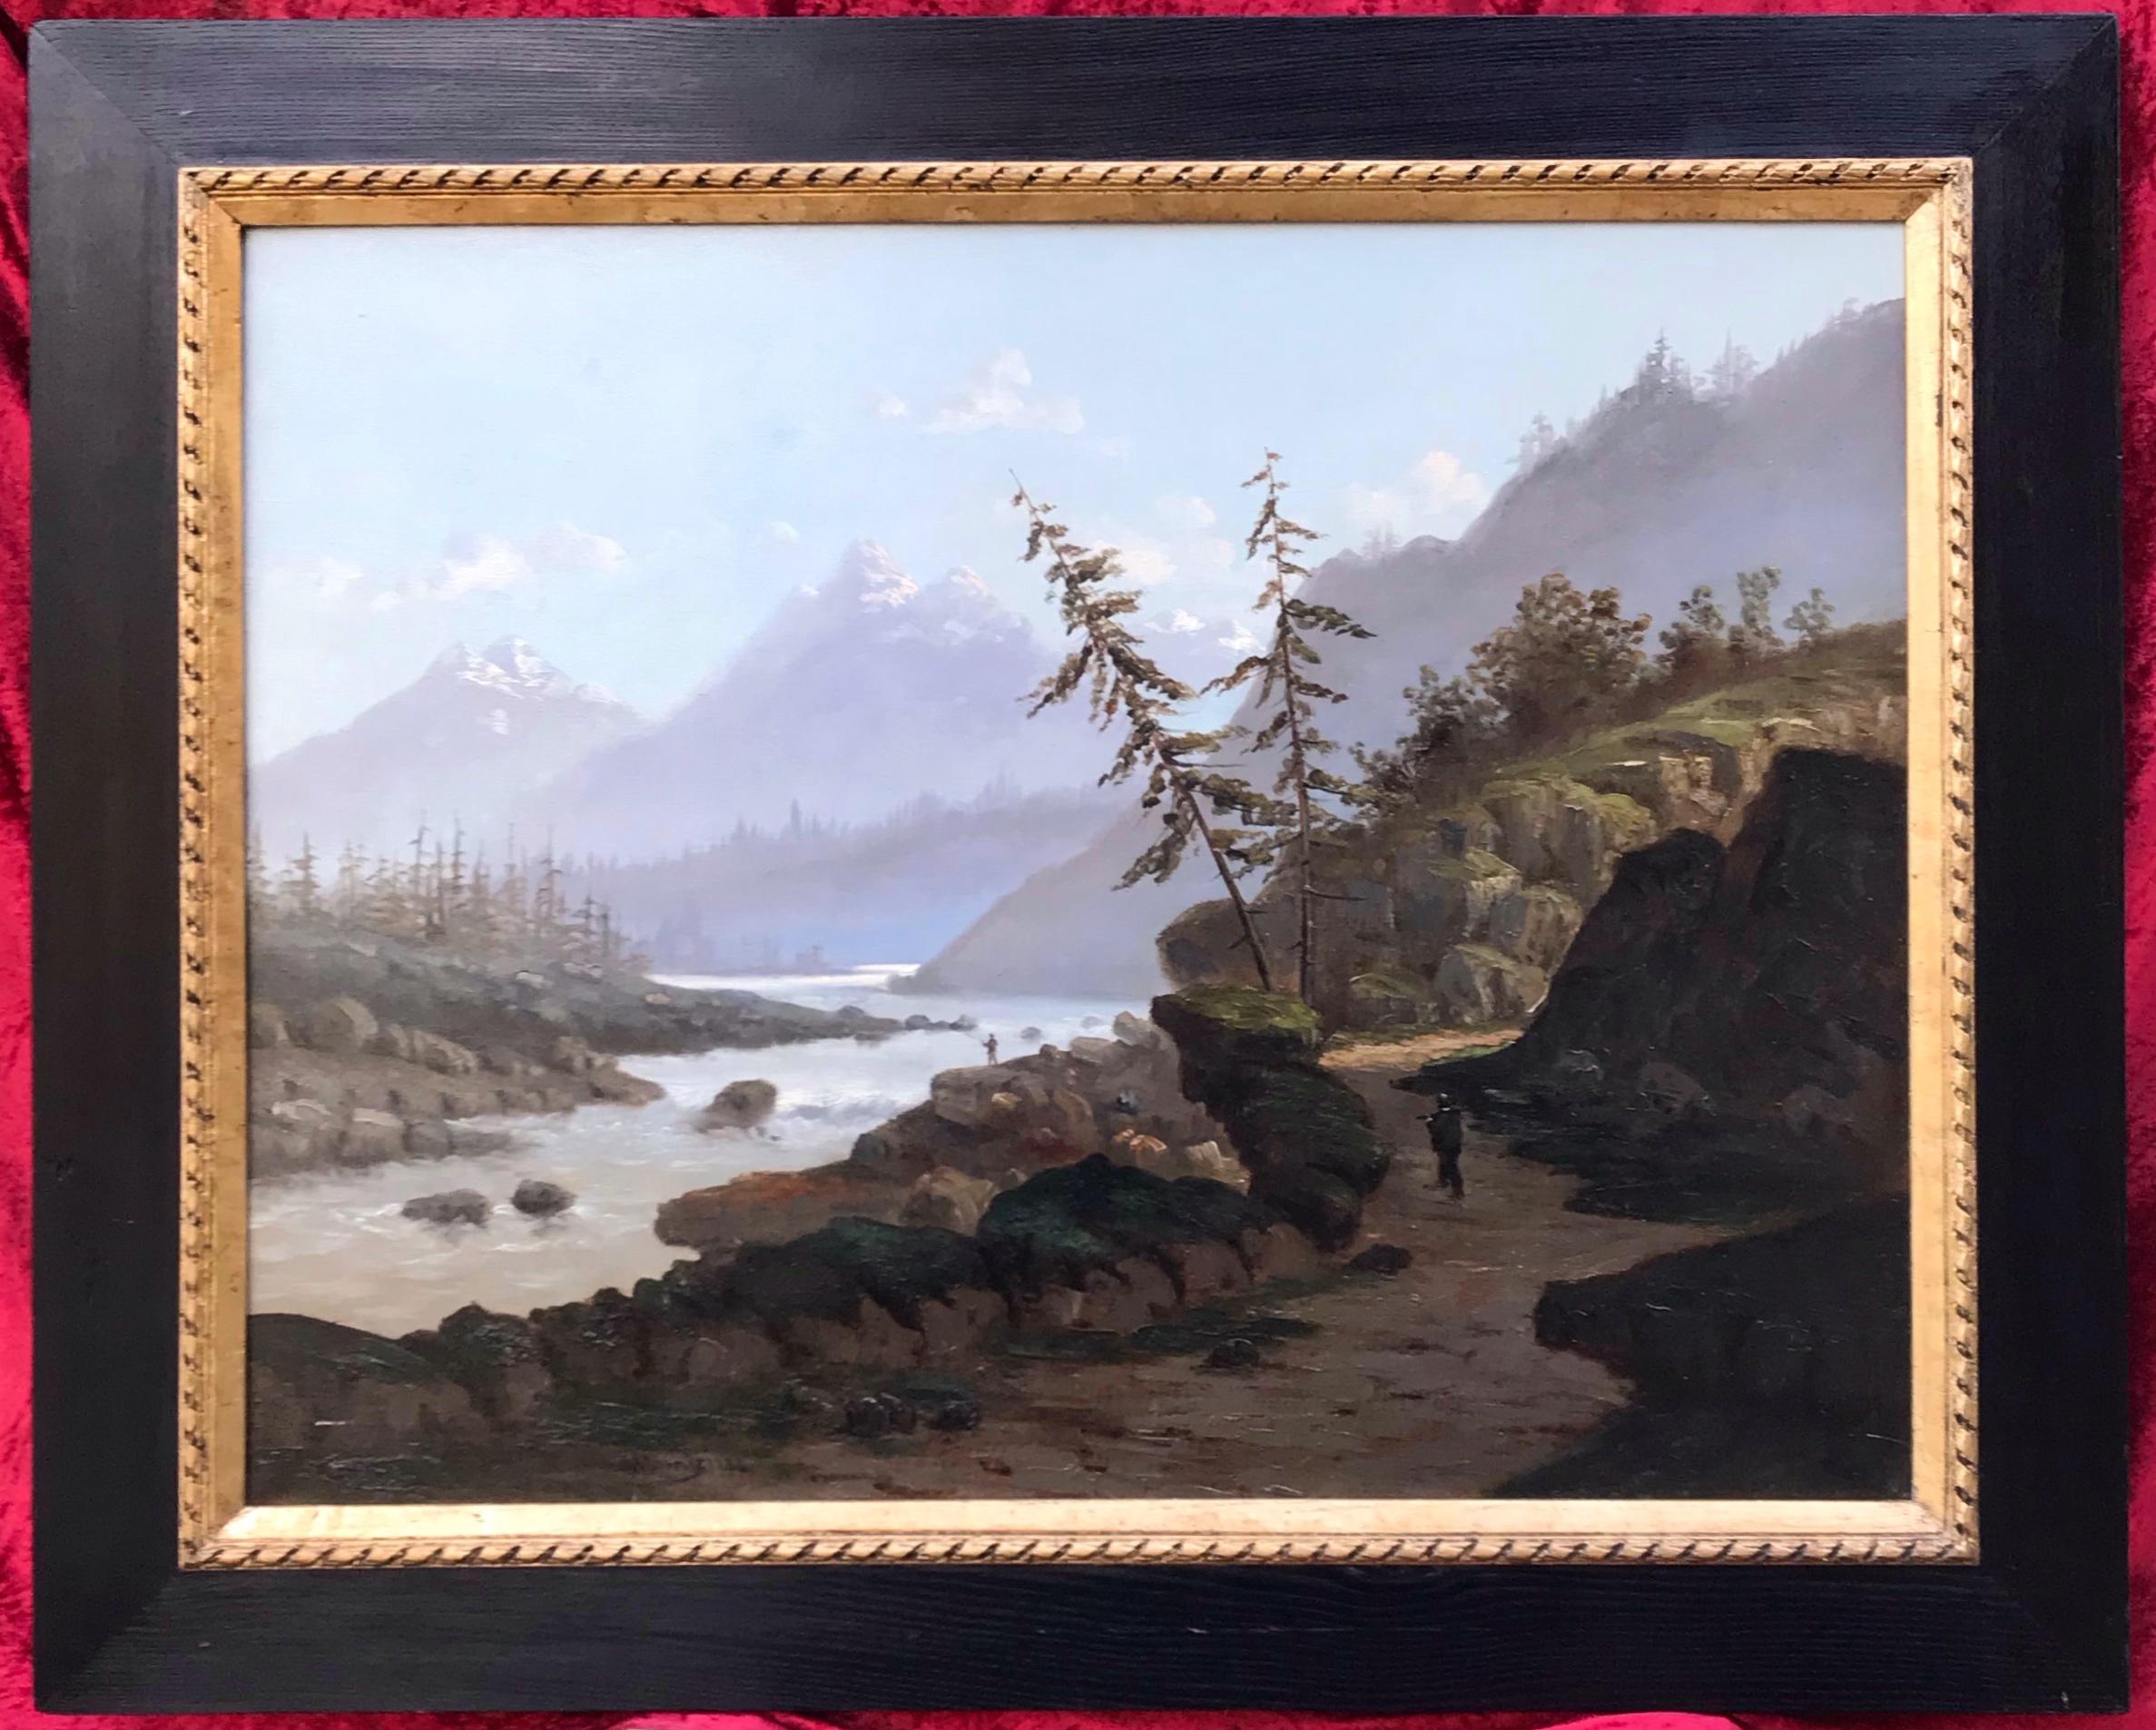 MOSNY Henry Landscape Painting – Landschaften der Berge